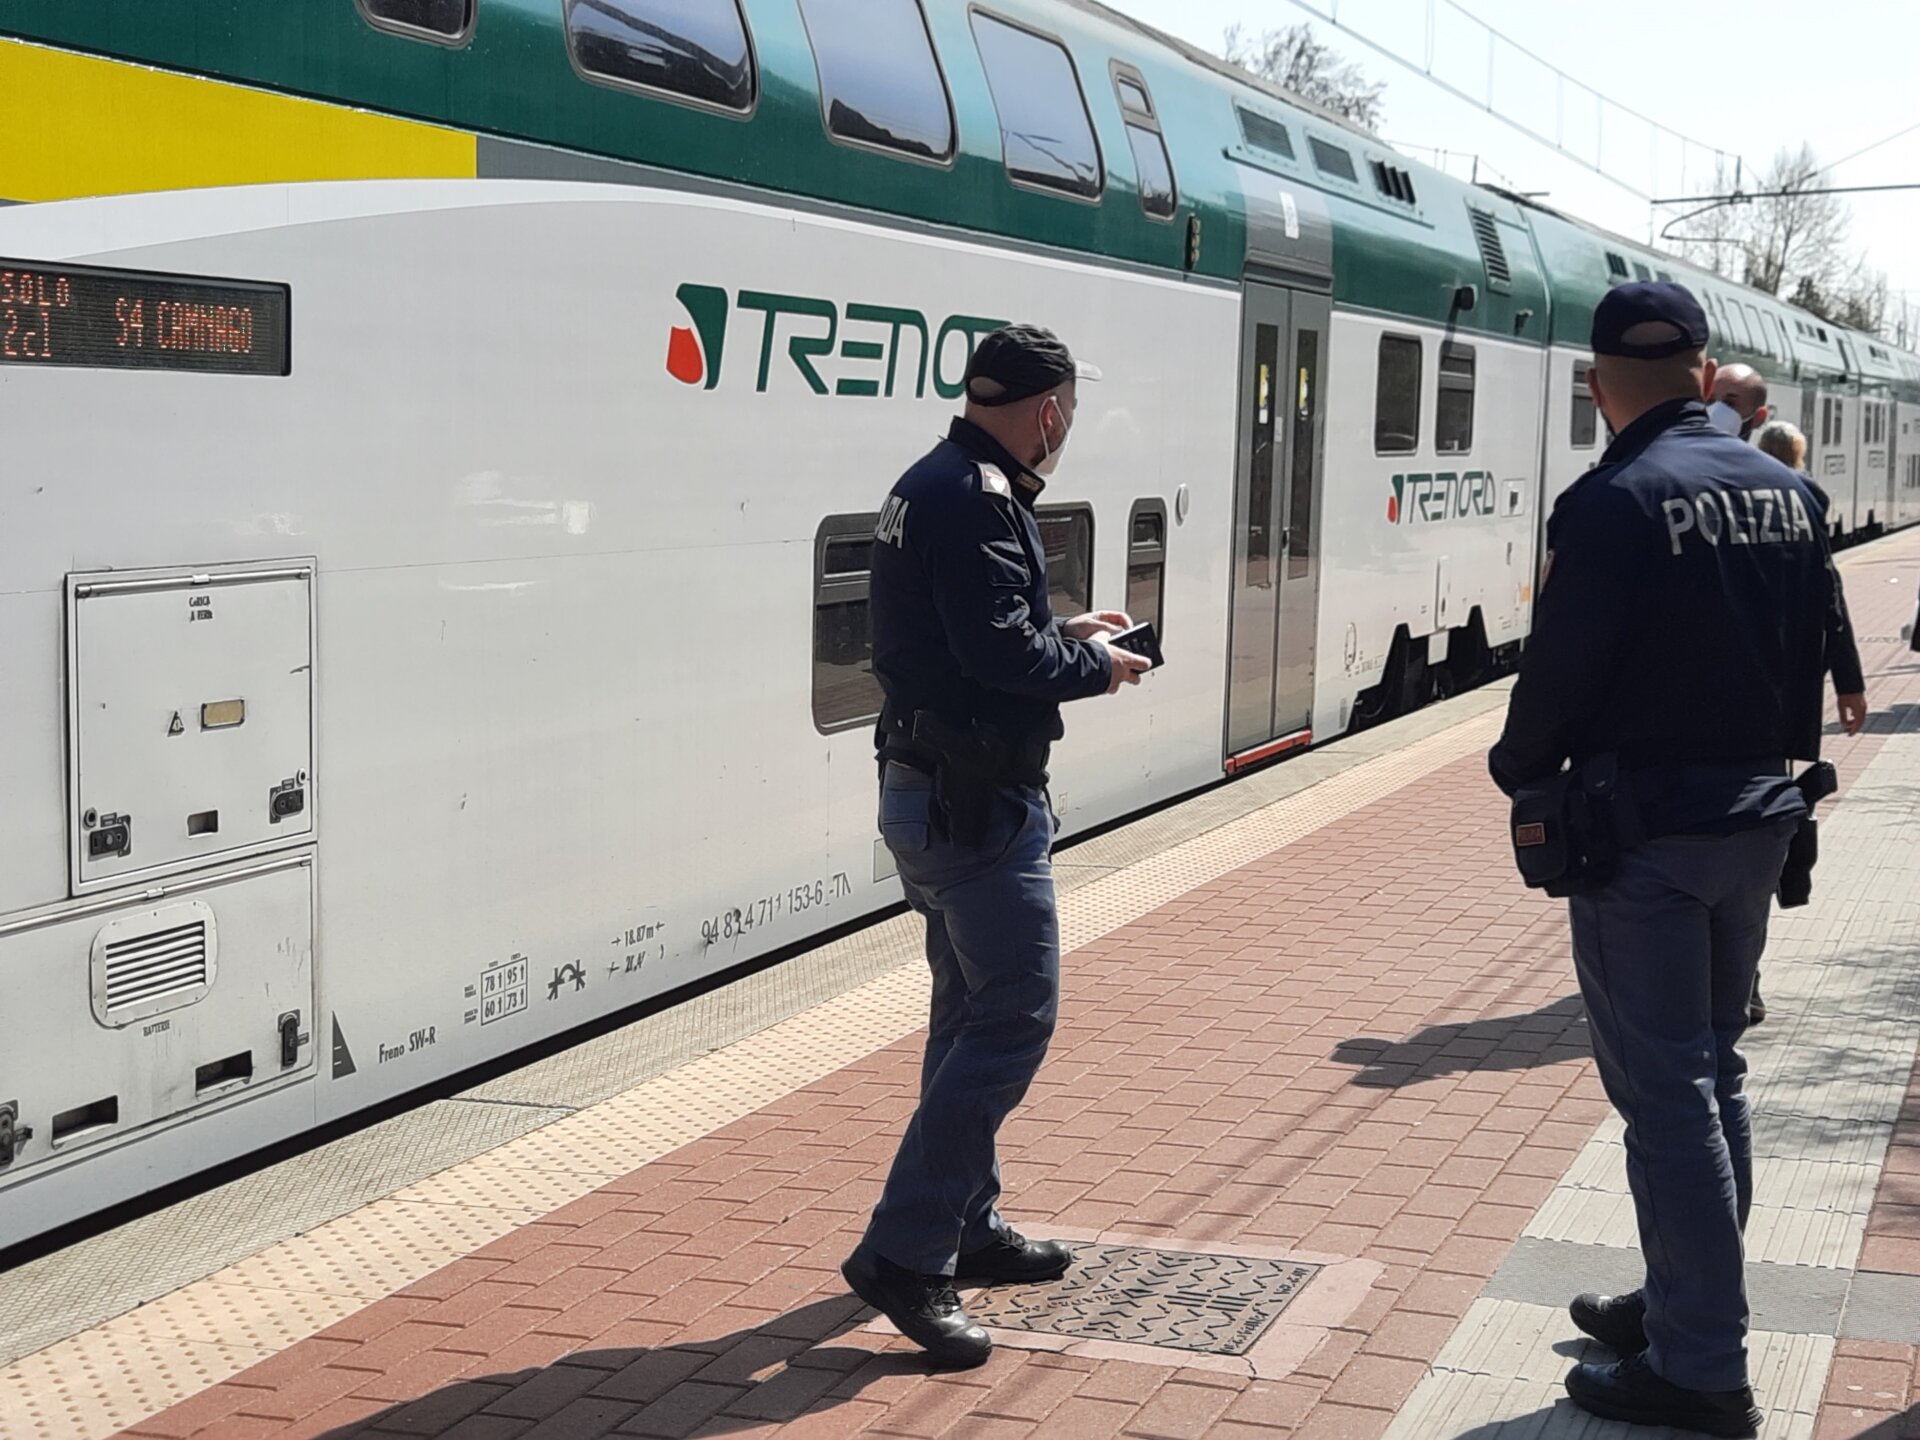 treno finestrino rotto carabinieri stazione varedo polfer